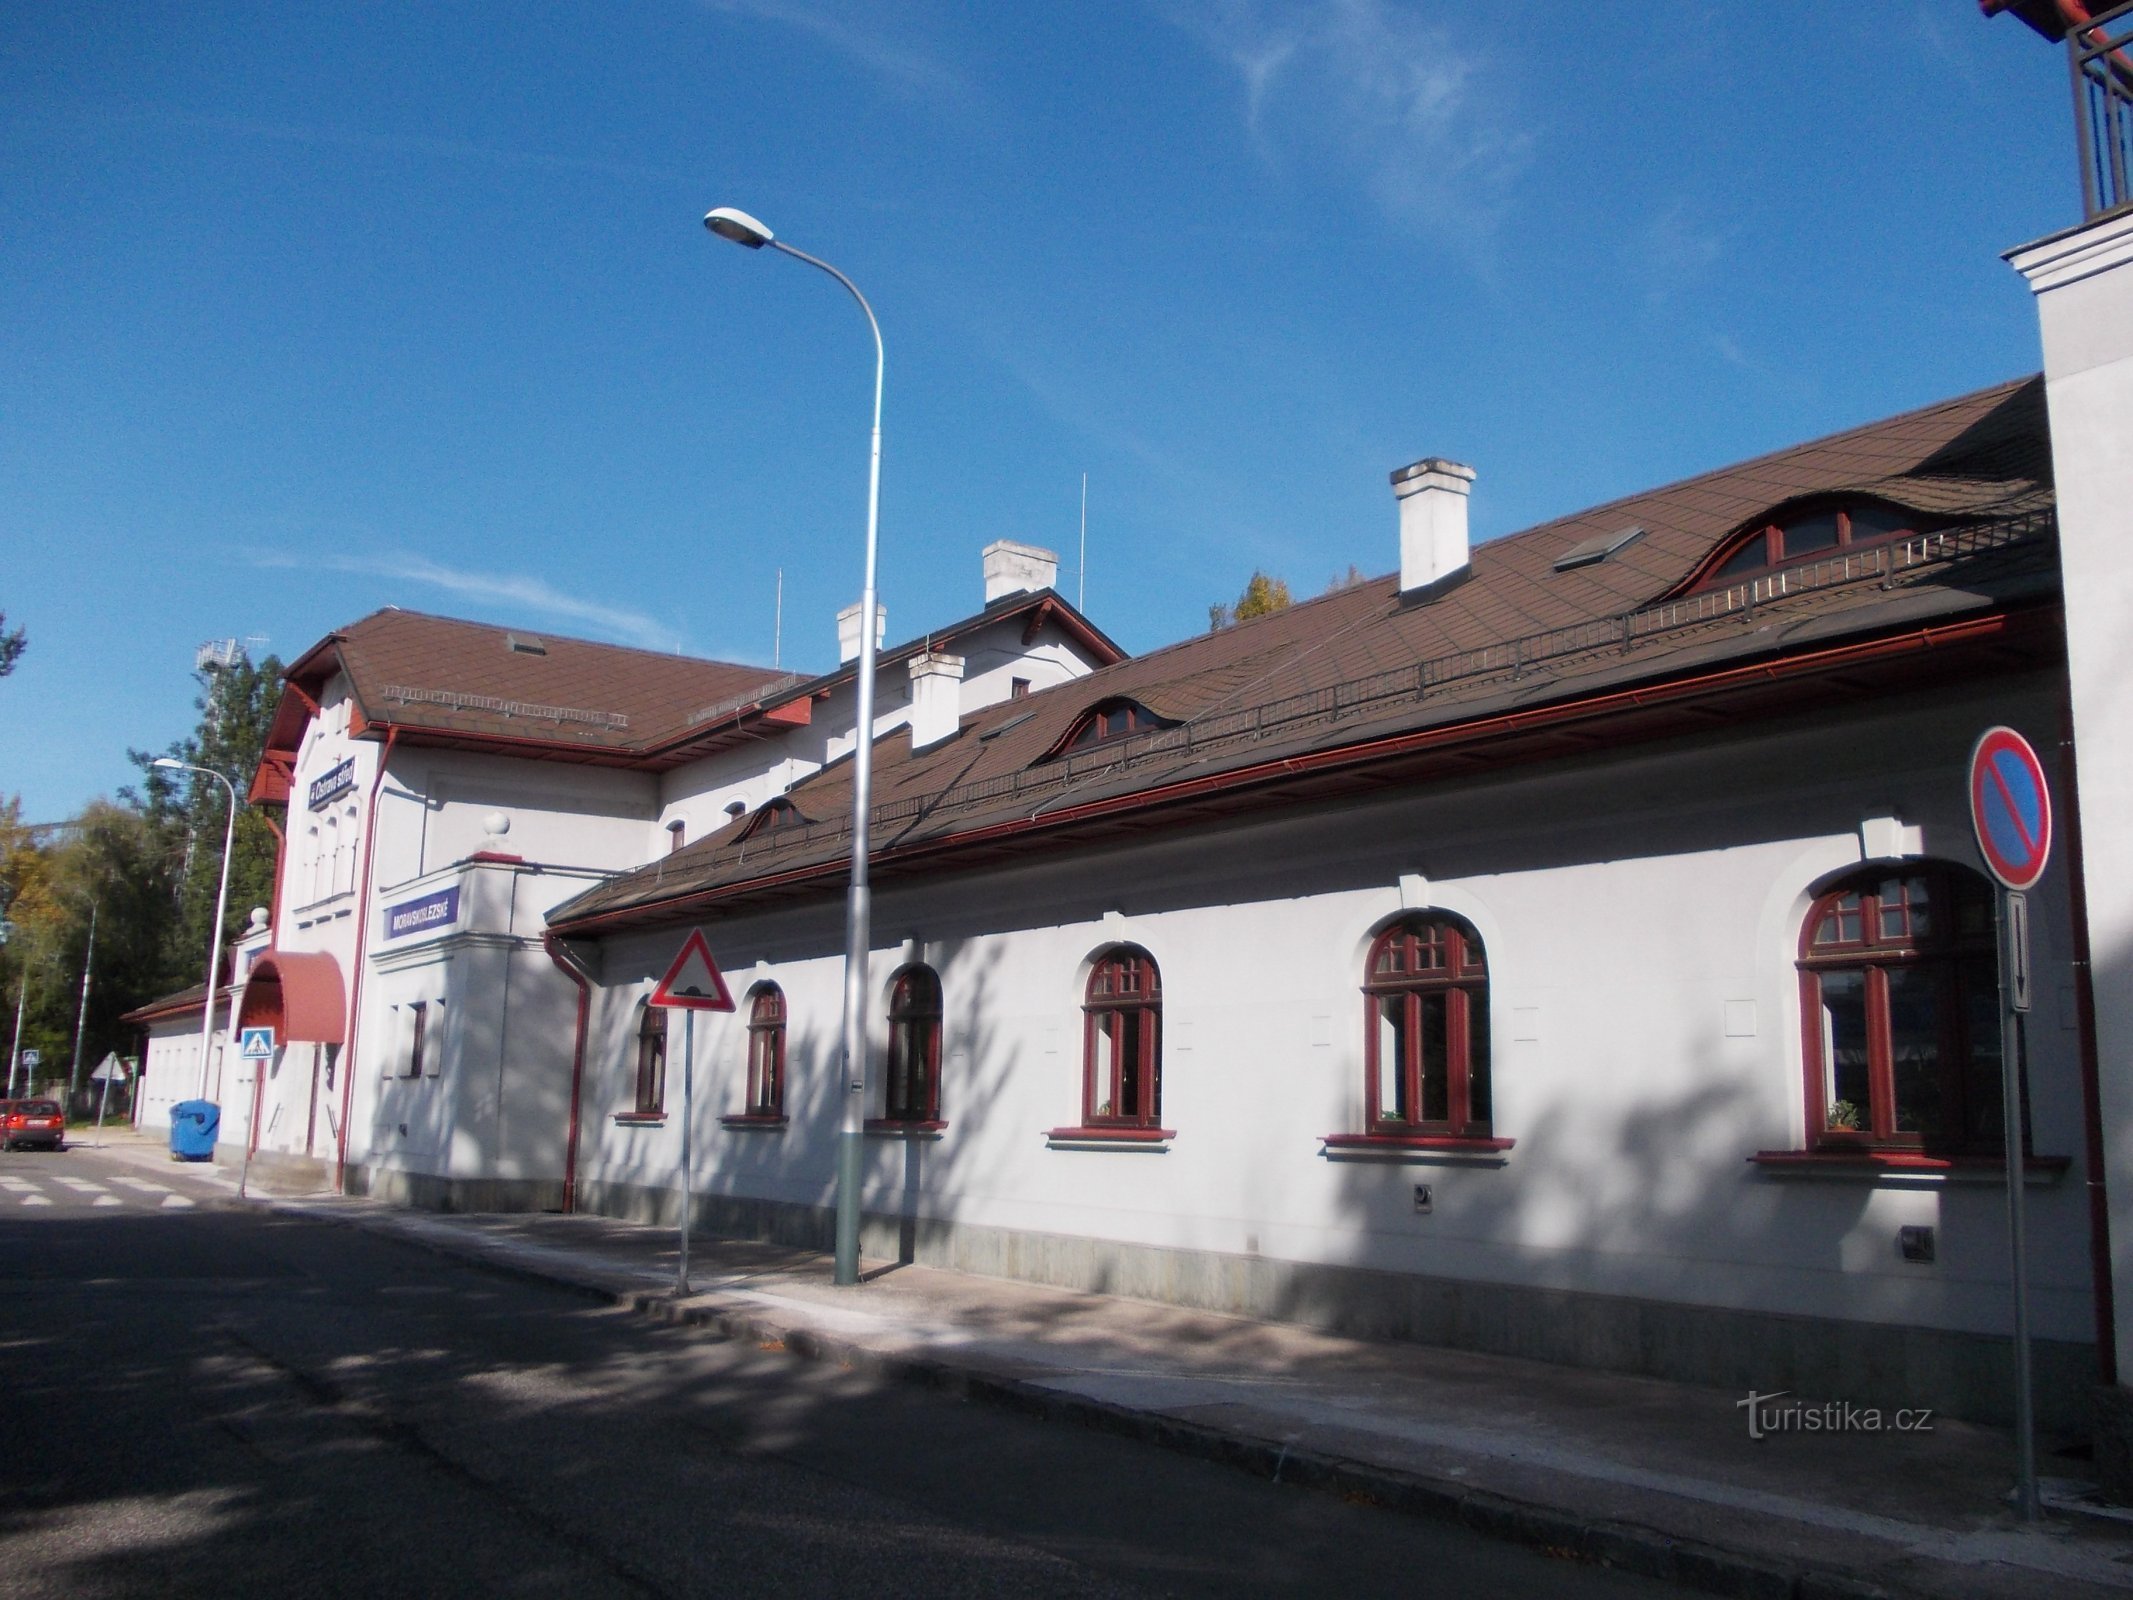 bâtiment de la gare de 1871, une partie du bâtiment a été ajoutée plus tard